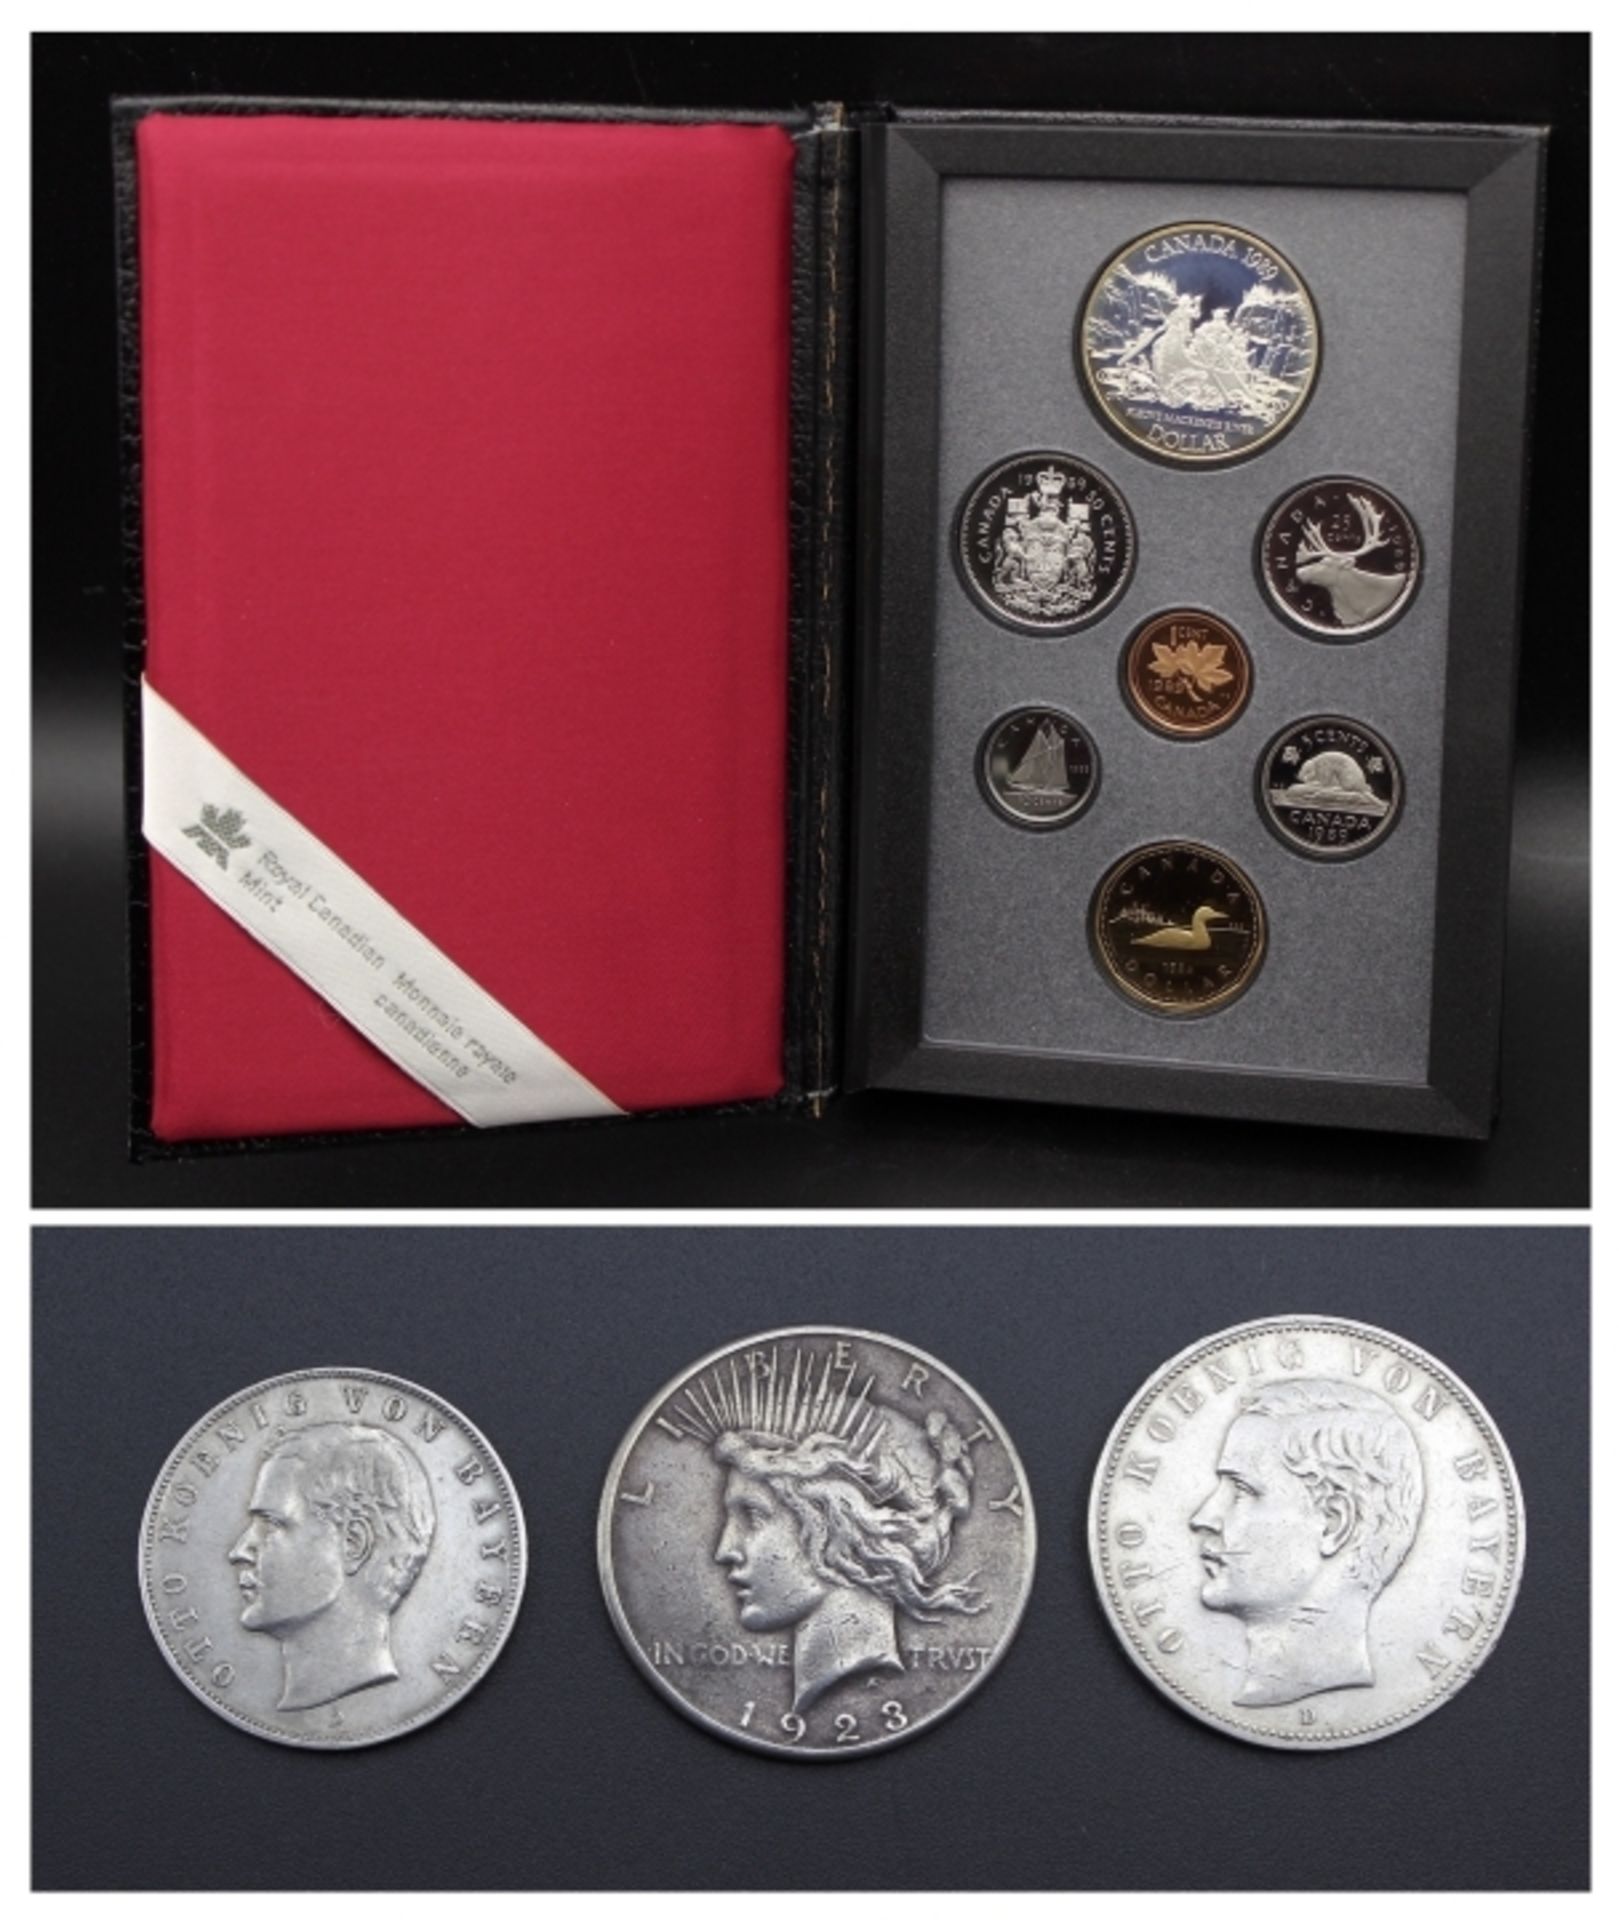 Lot Silbermünzen 1. Fünf Mark, 1908 D, Otto Koenig von Bayern, Altersspuren 2. Fünf Mark, 1909 D,